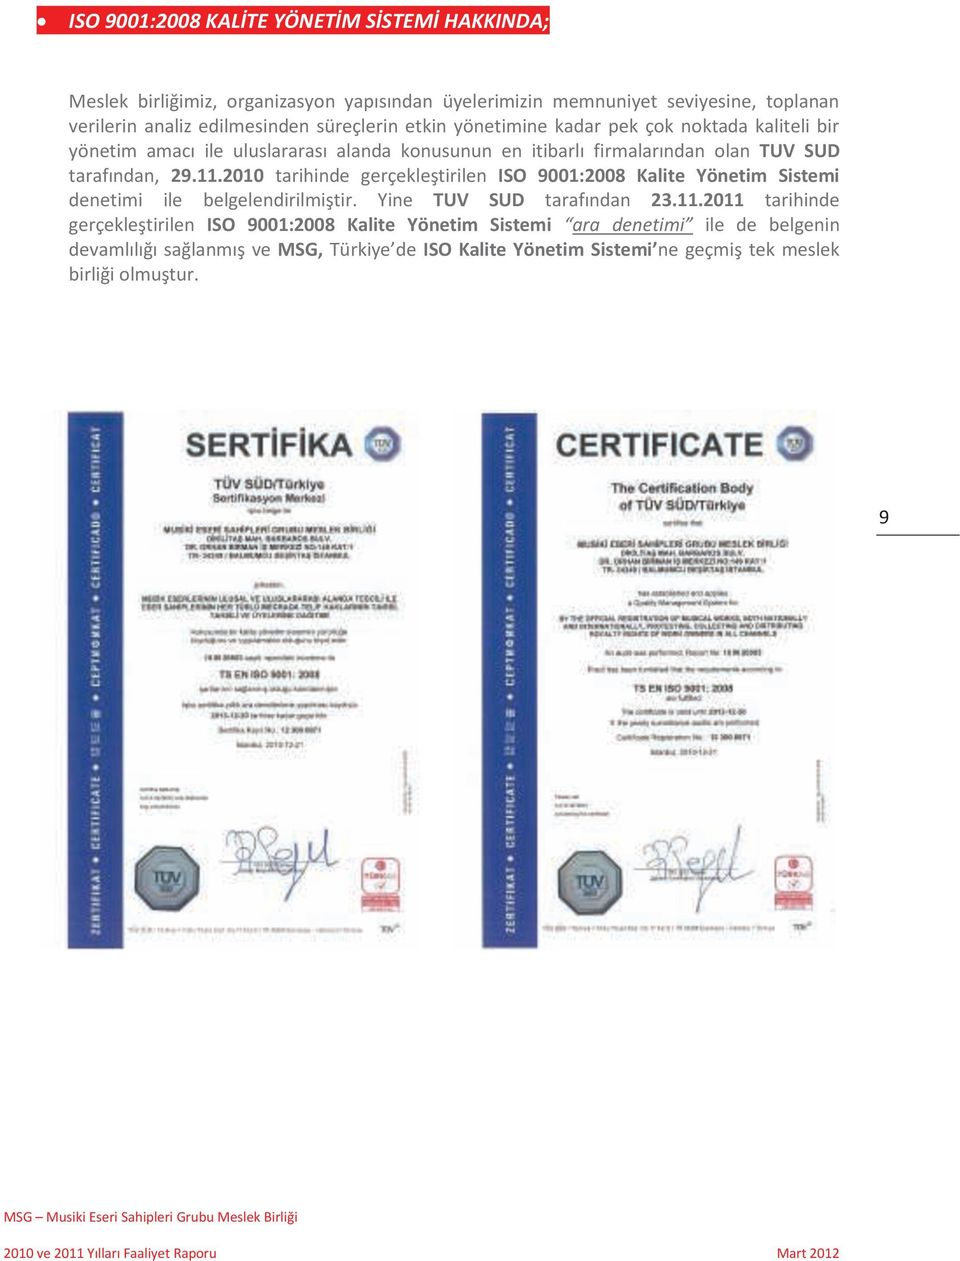 2010 tarihinde gerçekleştirilen ISO 9001:2008 Kalite Yönetim Sistemi denetimi ile belgelendirilmiştir. Yine TUV SUD tarafından 23.11.